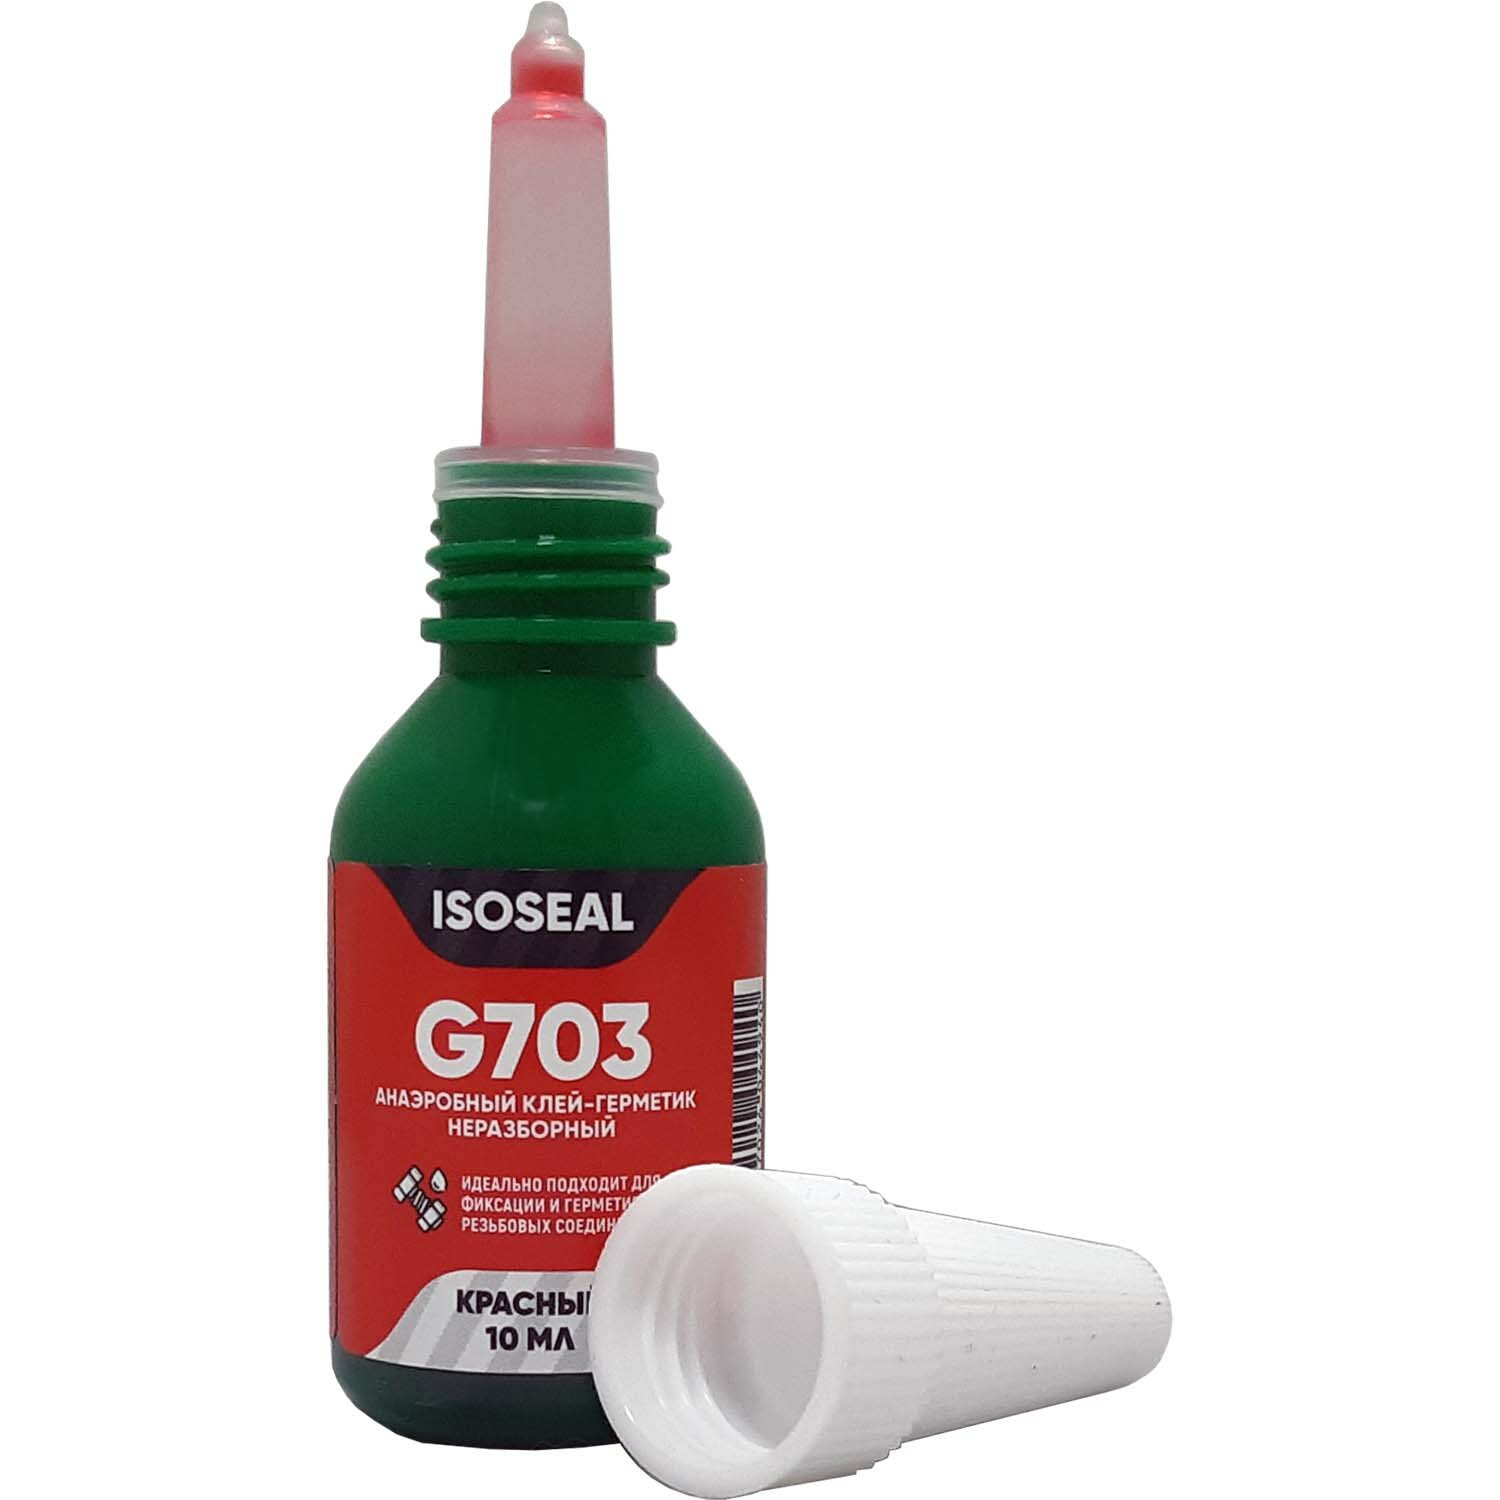 Анаэробный неразборный клей-герметик для резьбовых соединений ISOSEAL G703 красный 10 мл